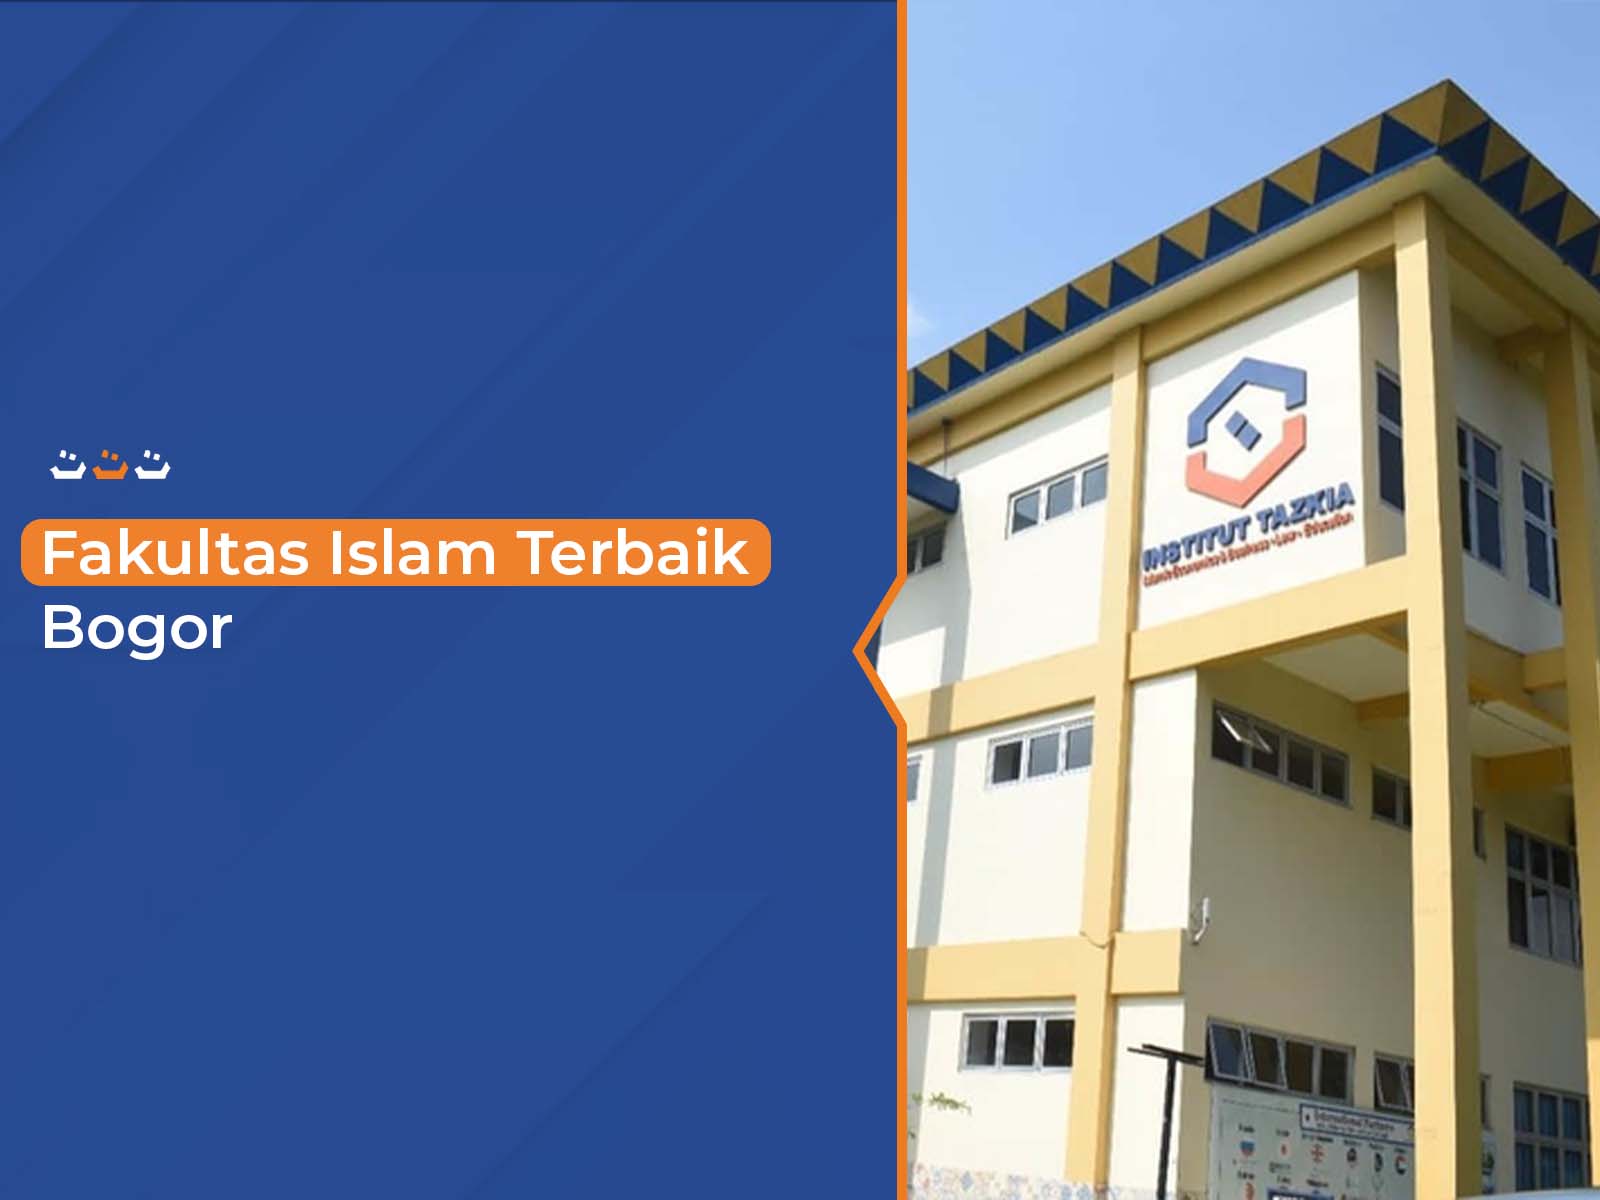 Fakultas Islam Terbaik Bogor